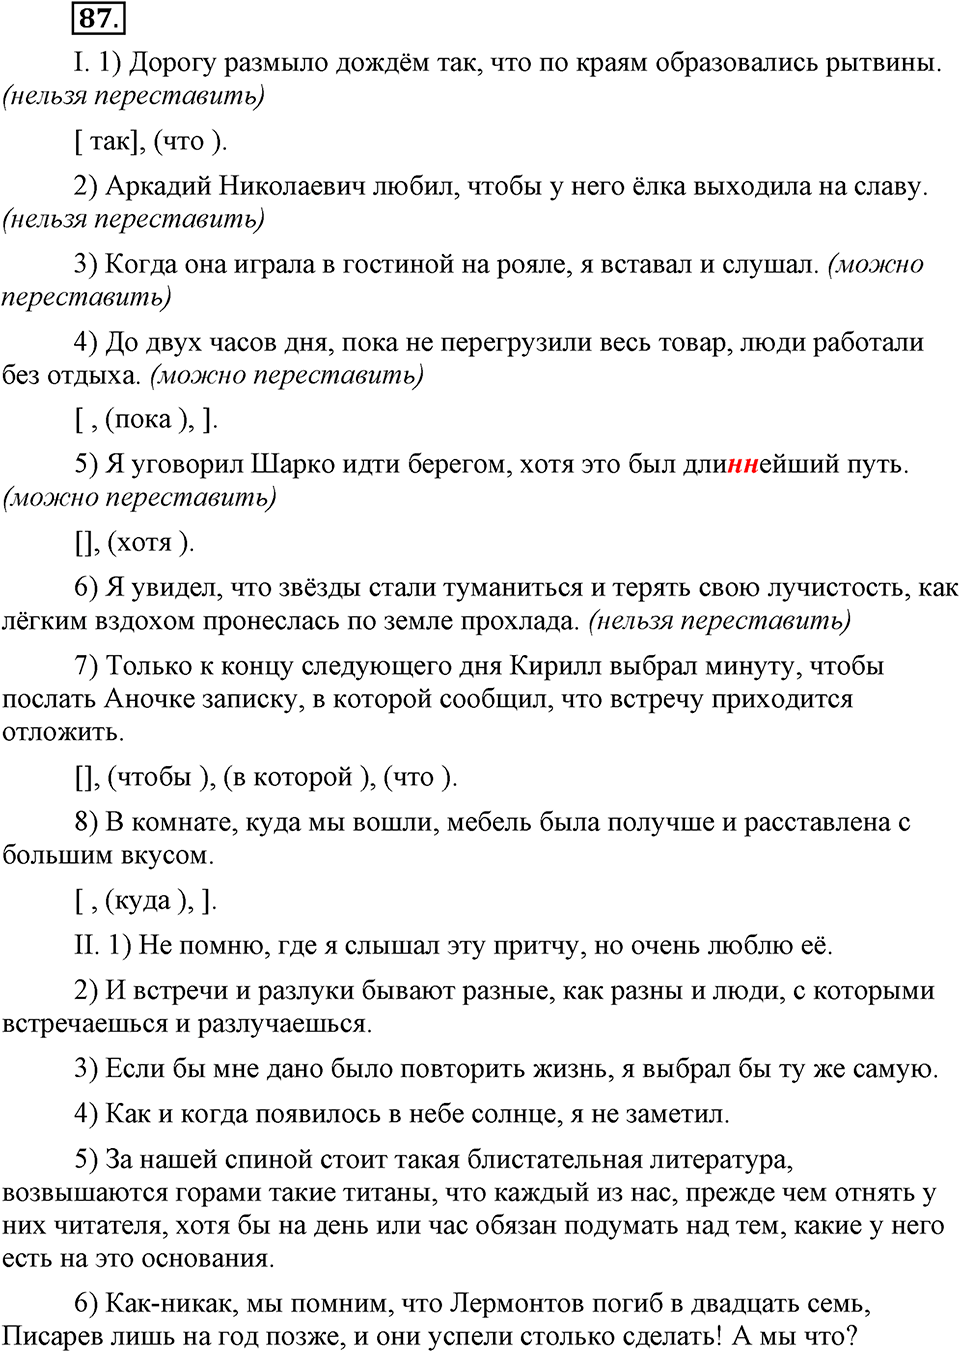 страница 42 номер 87 русский язык 9 класс Бархударов 2011 год